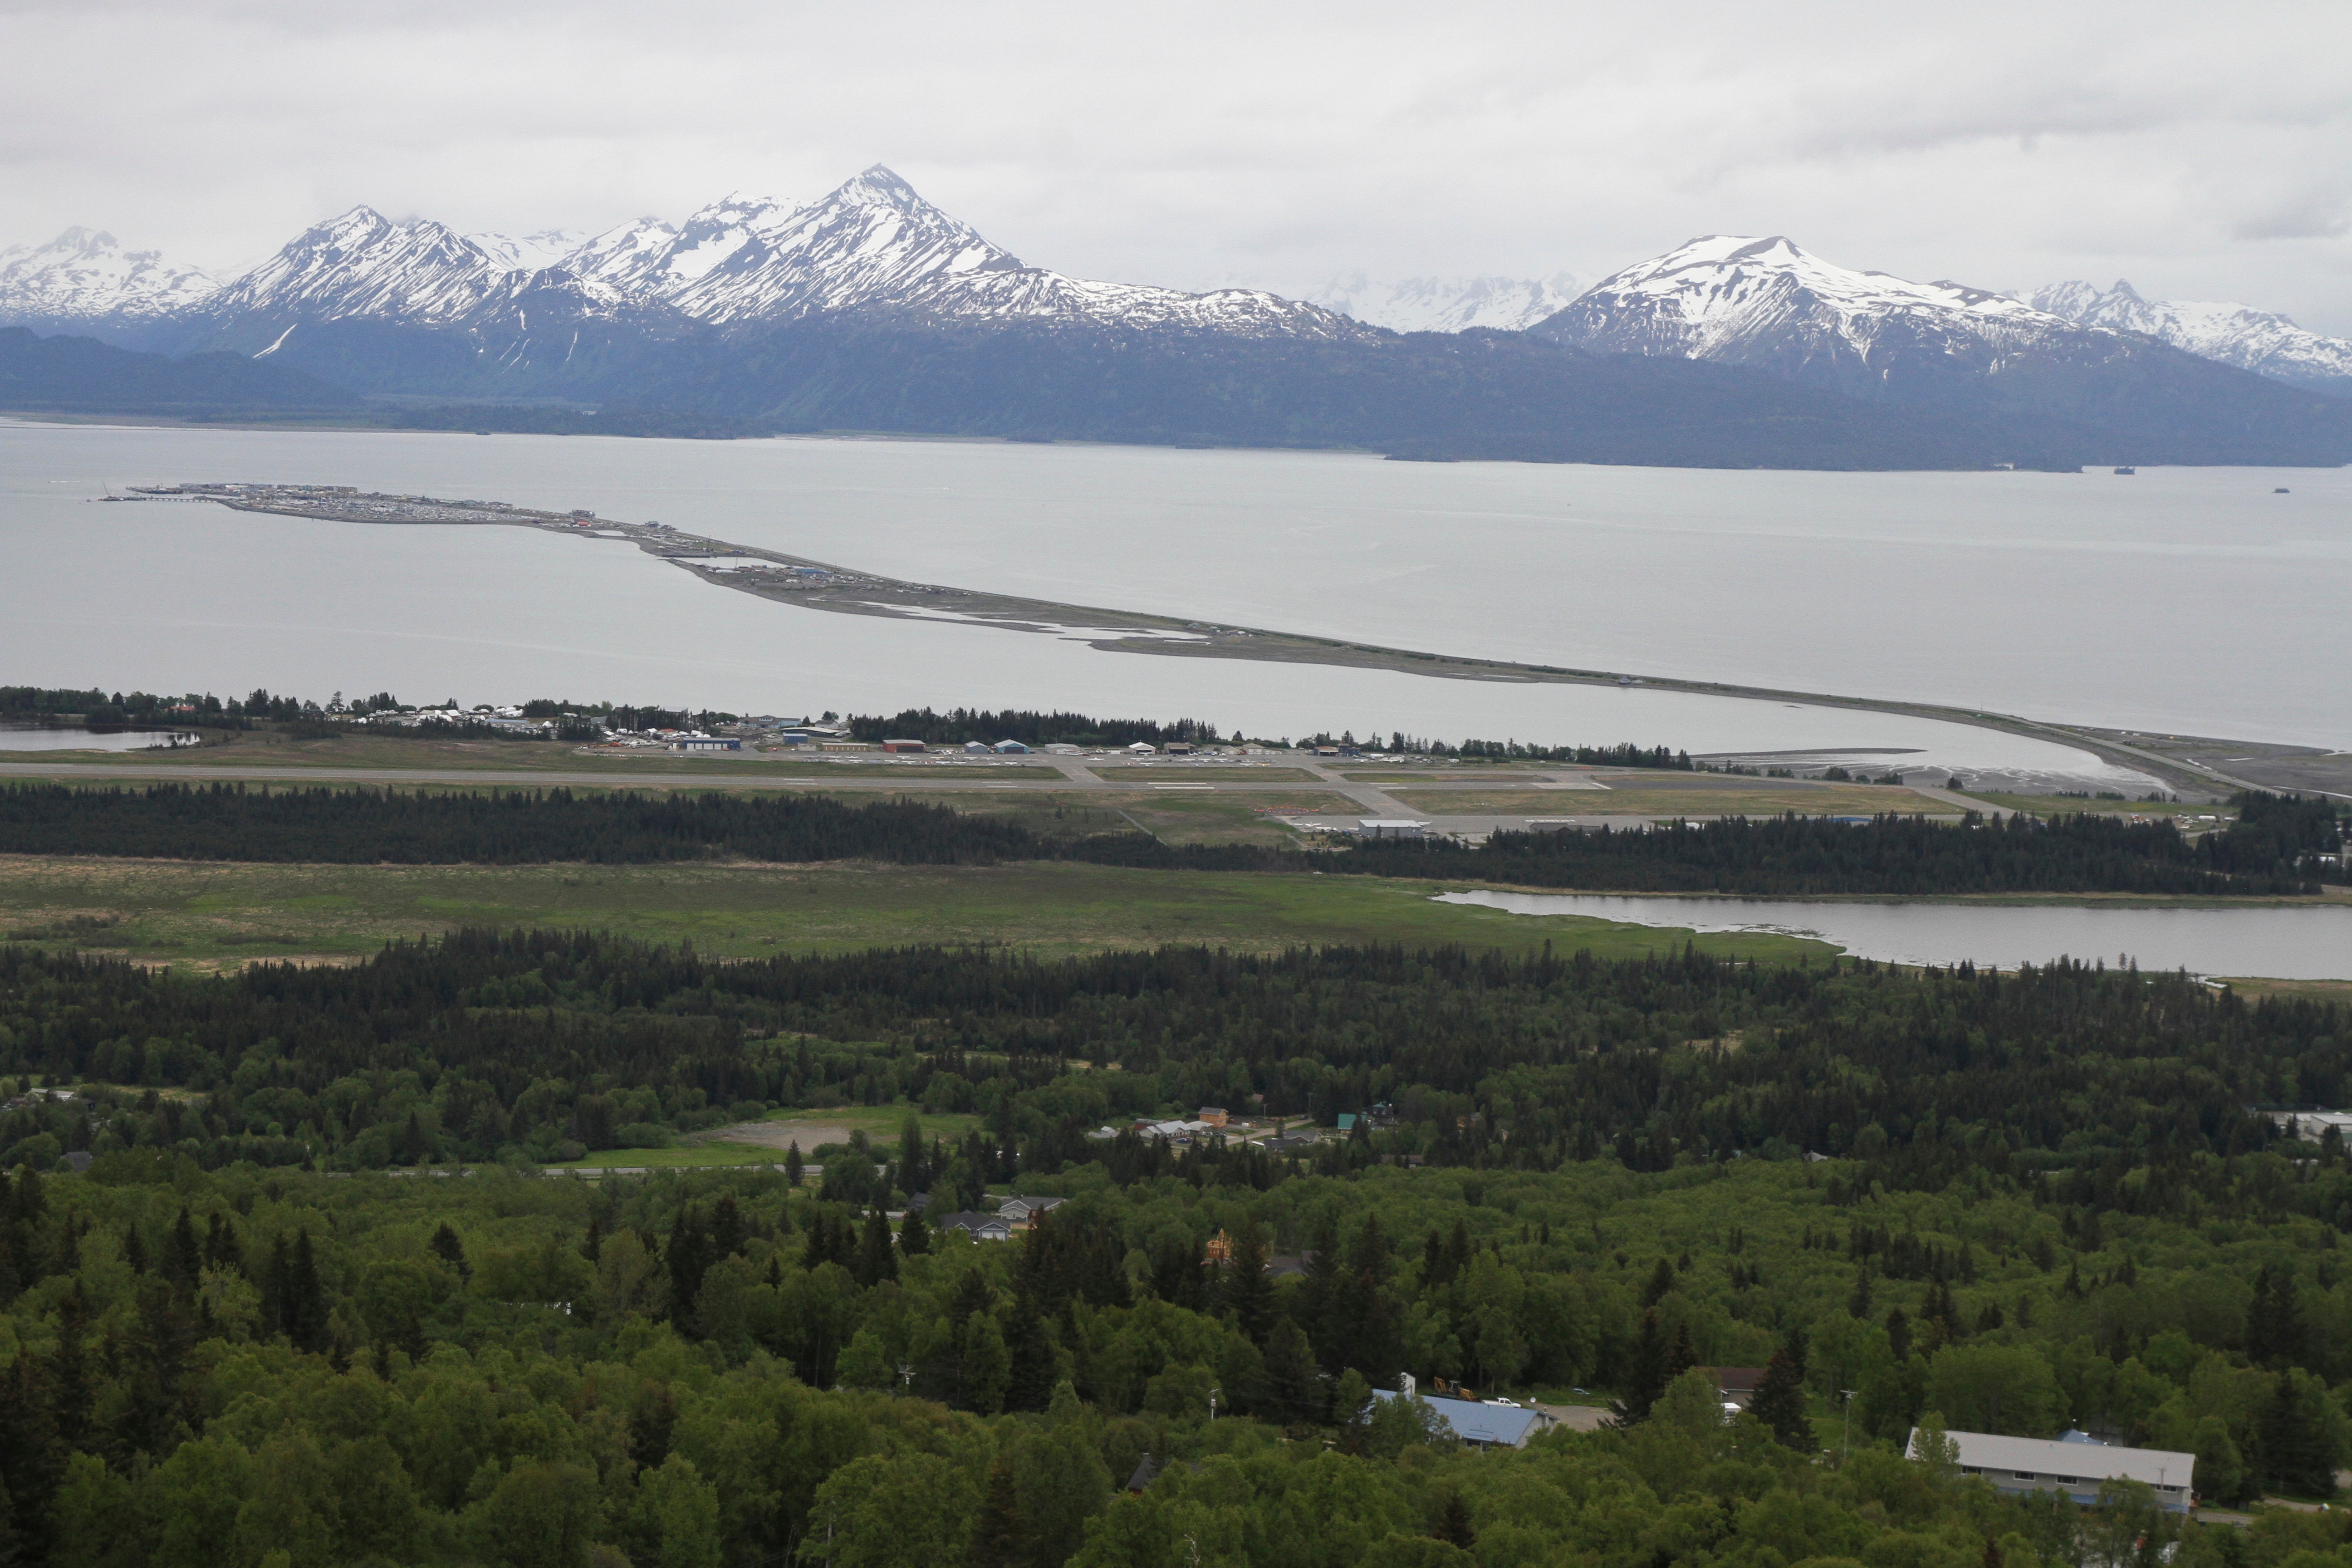 The landscapes of Alaska